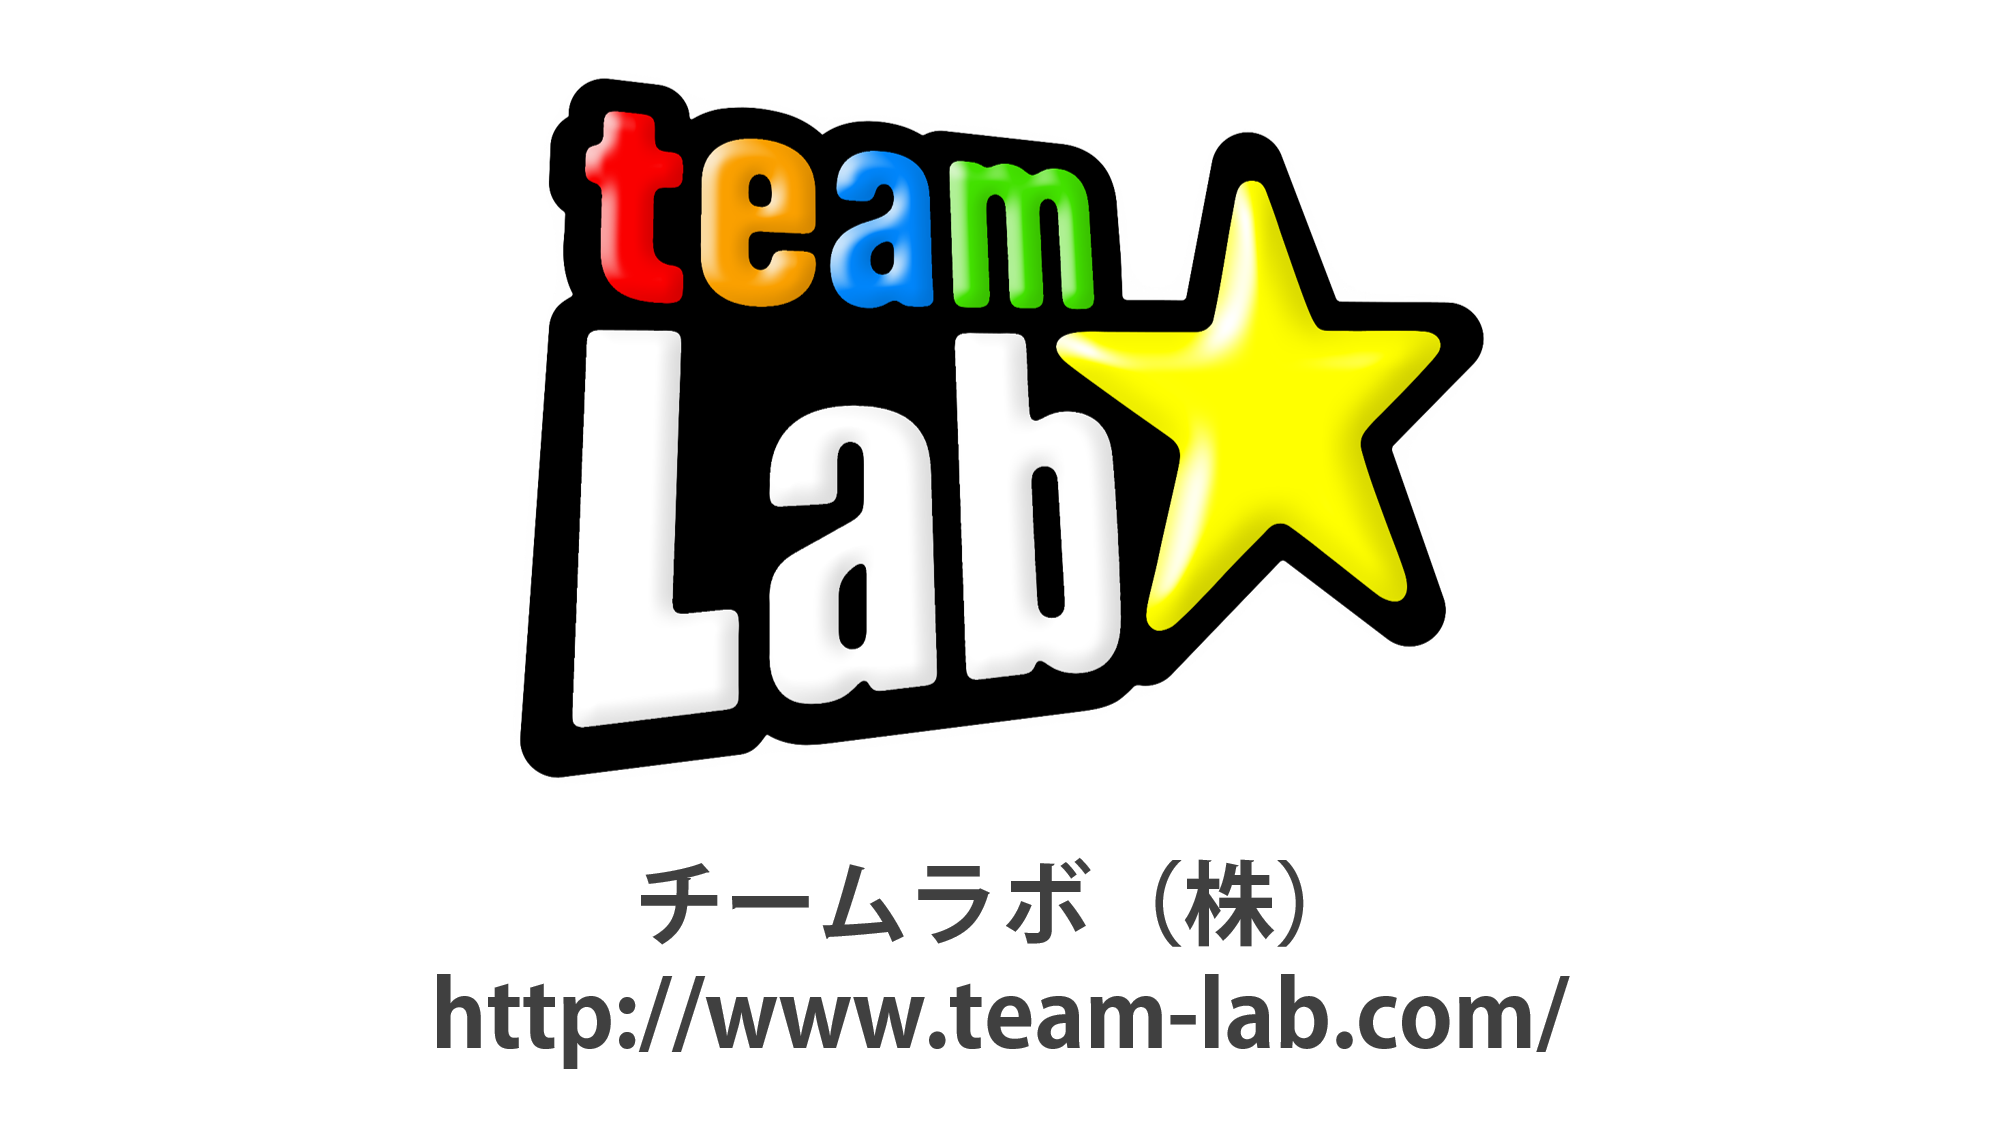 teamlab2015.png